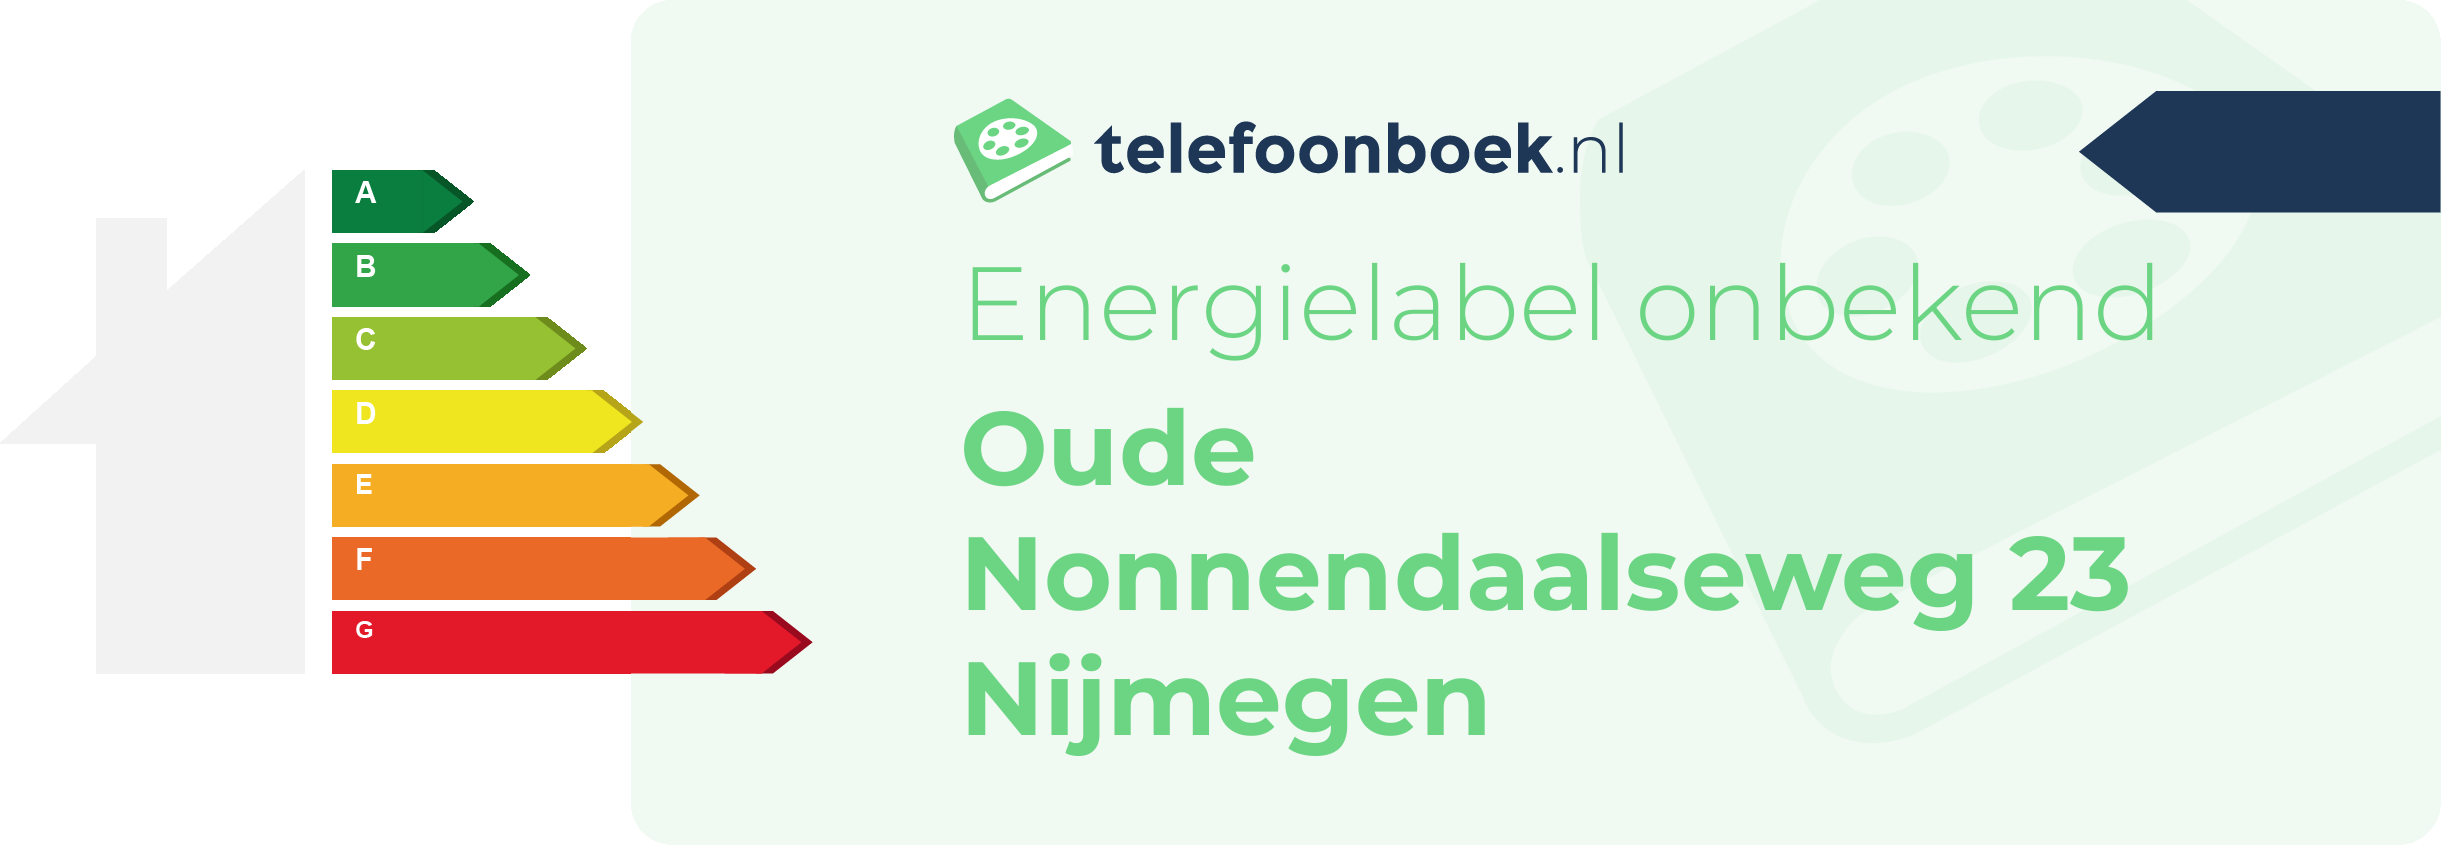 Energielabel Oude Nonnendaalseweg 23 Nijmegen